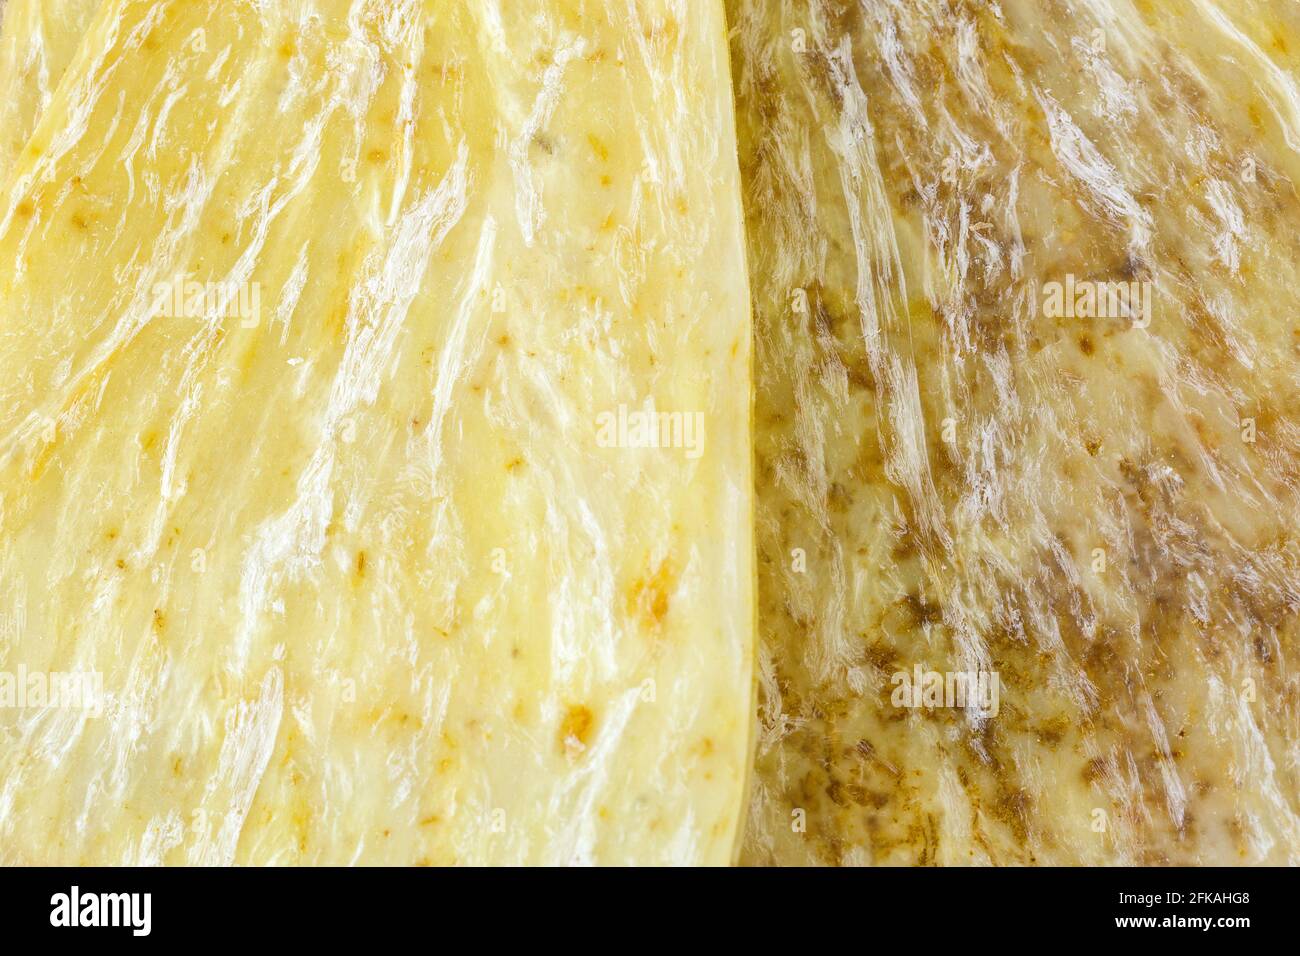 Closeup-Textur von getrocknetem Dong Quai, Dang GUI, bekannt als weiblicher Ginseng, abgeflachte Wurzel (Angelica sinensis) Stockfoto